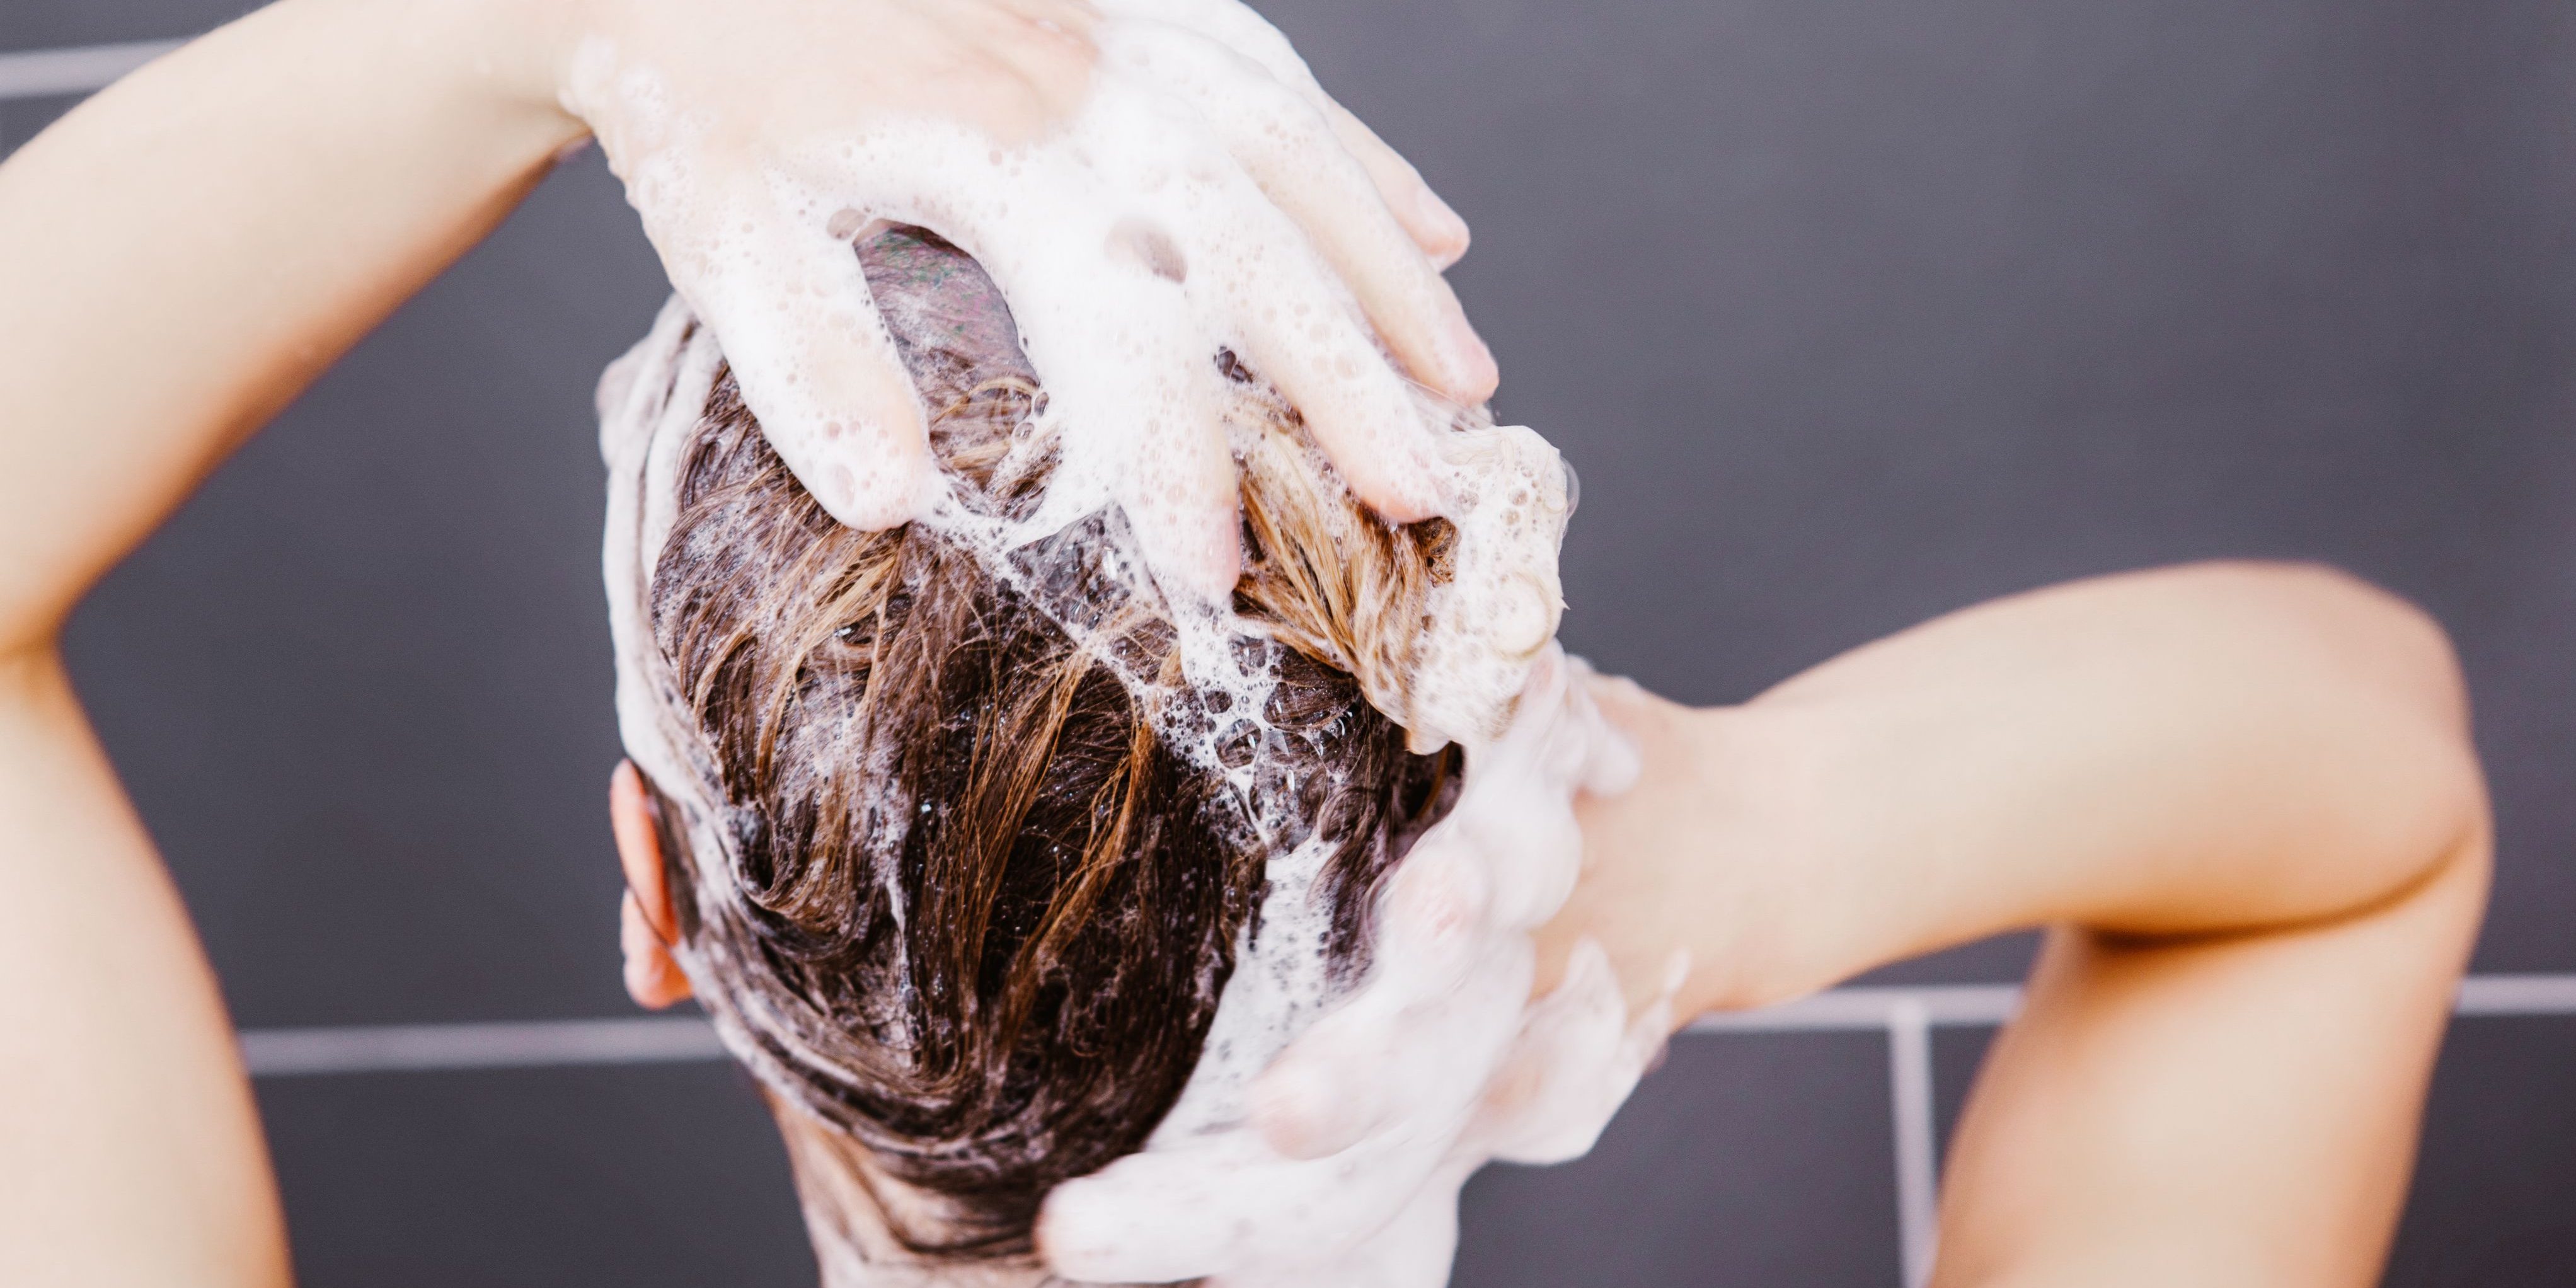 Как мыть волосы серным мылом